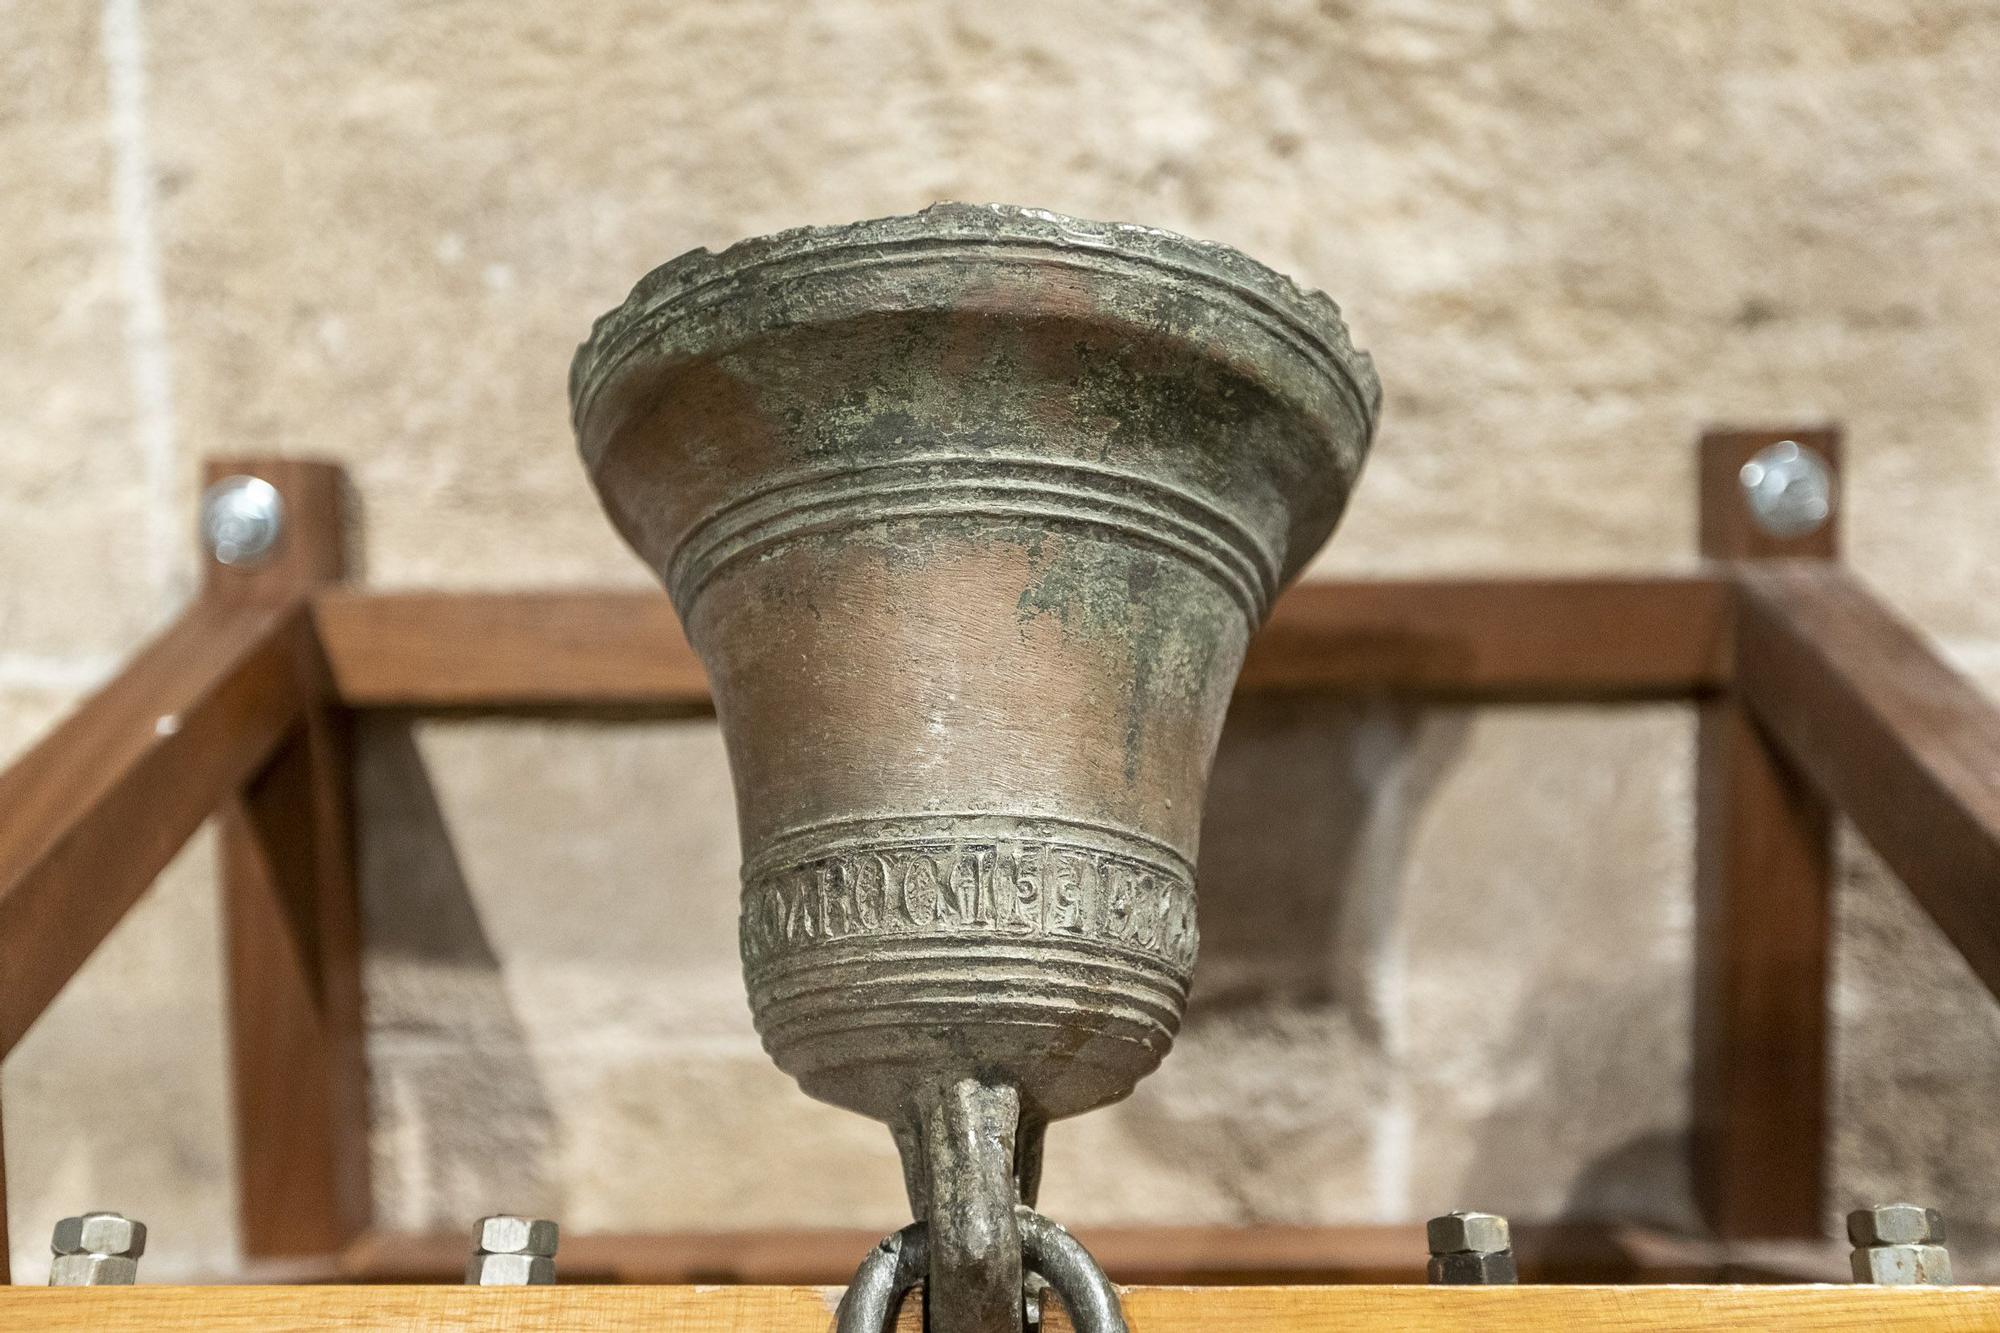 El Museo de la Catedral expone la campana más antigua de Valencia, datada en el año 1240